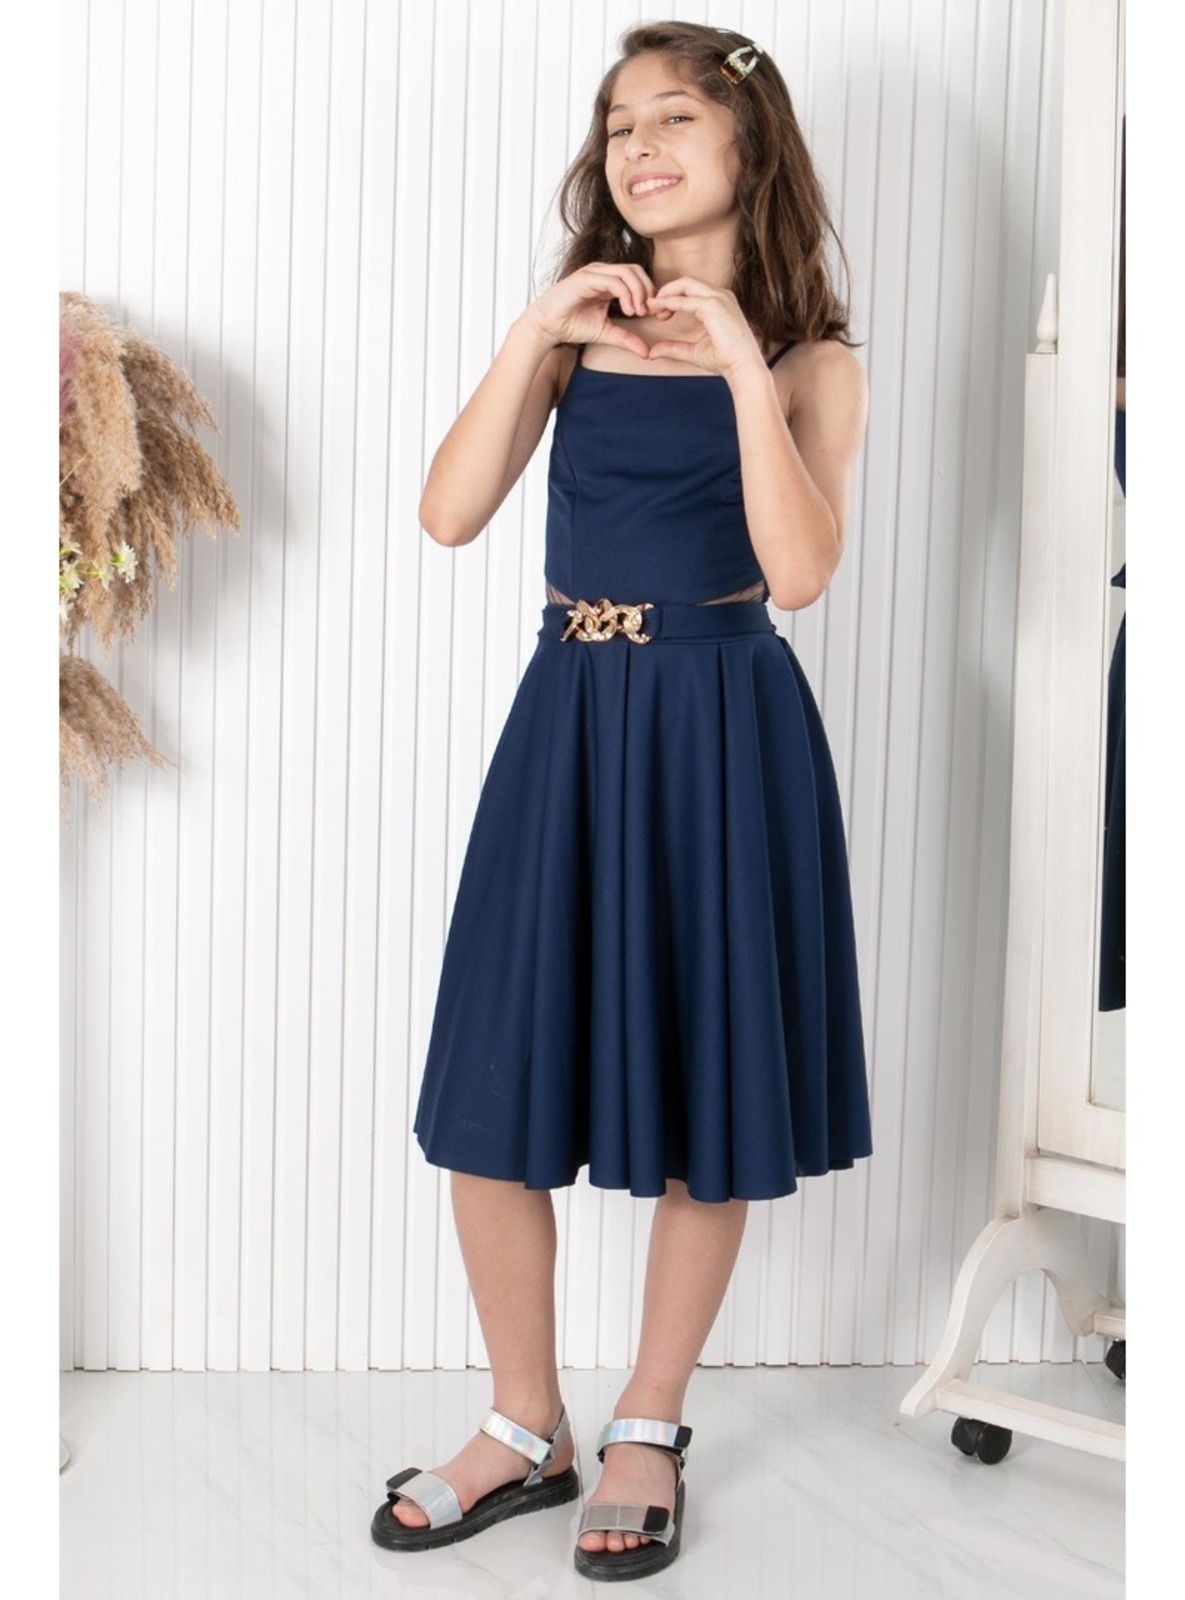 Navy Blue - Girls` Evening Dress